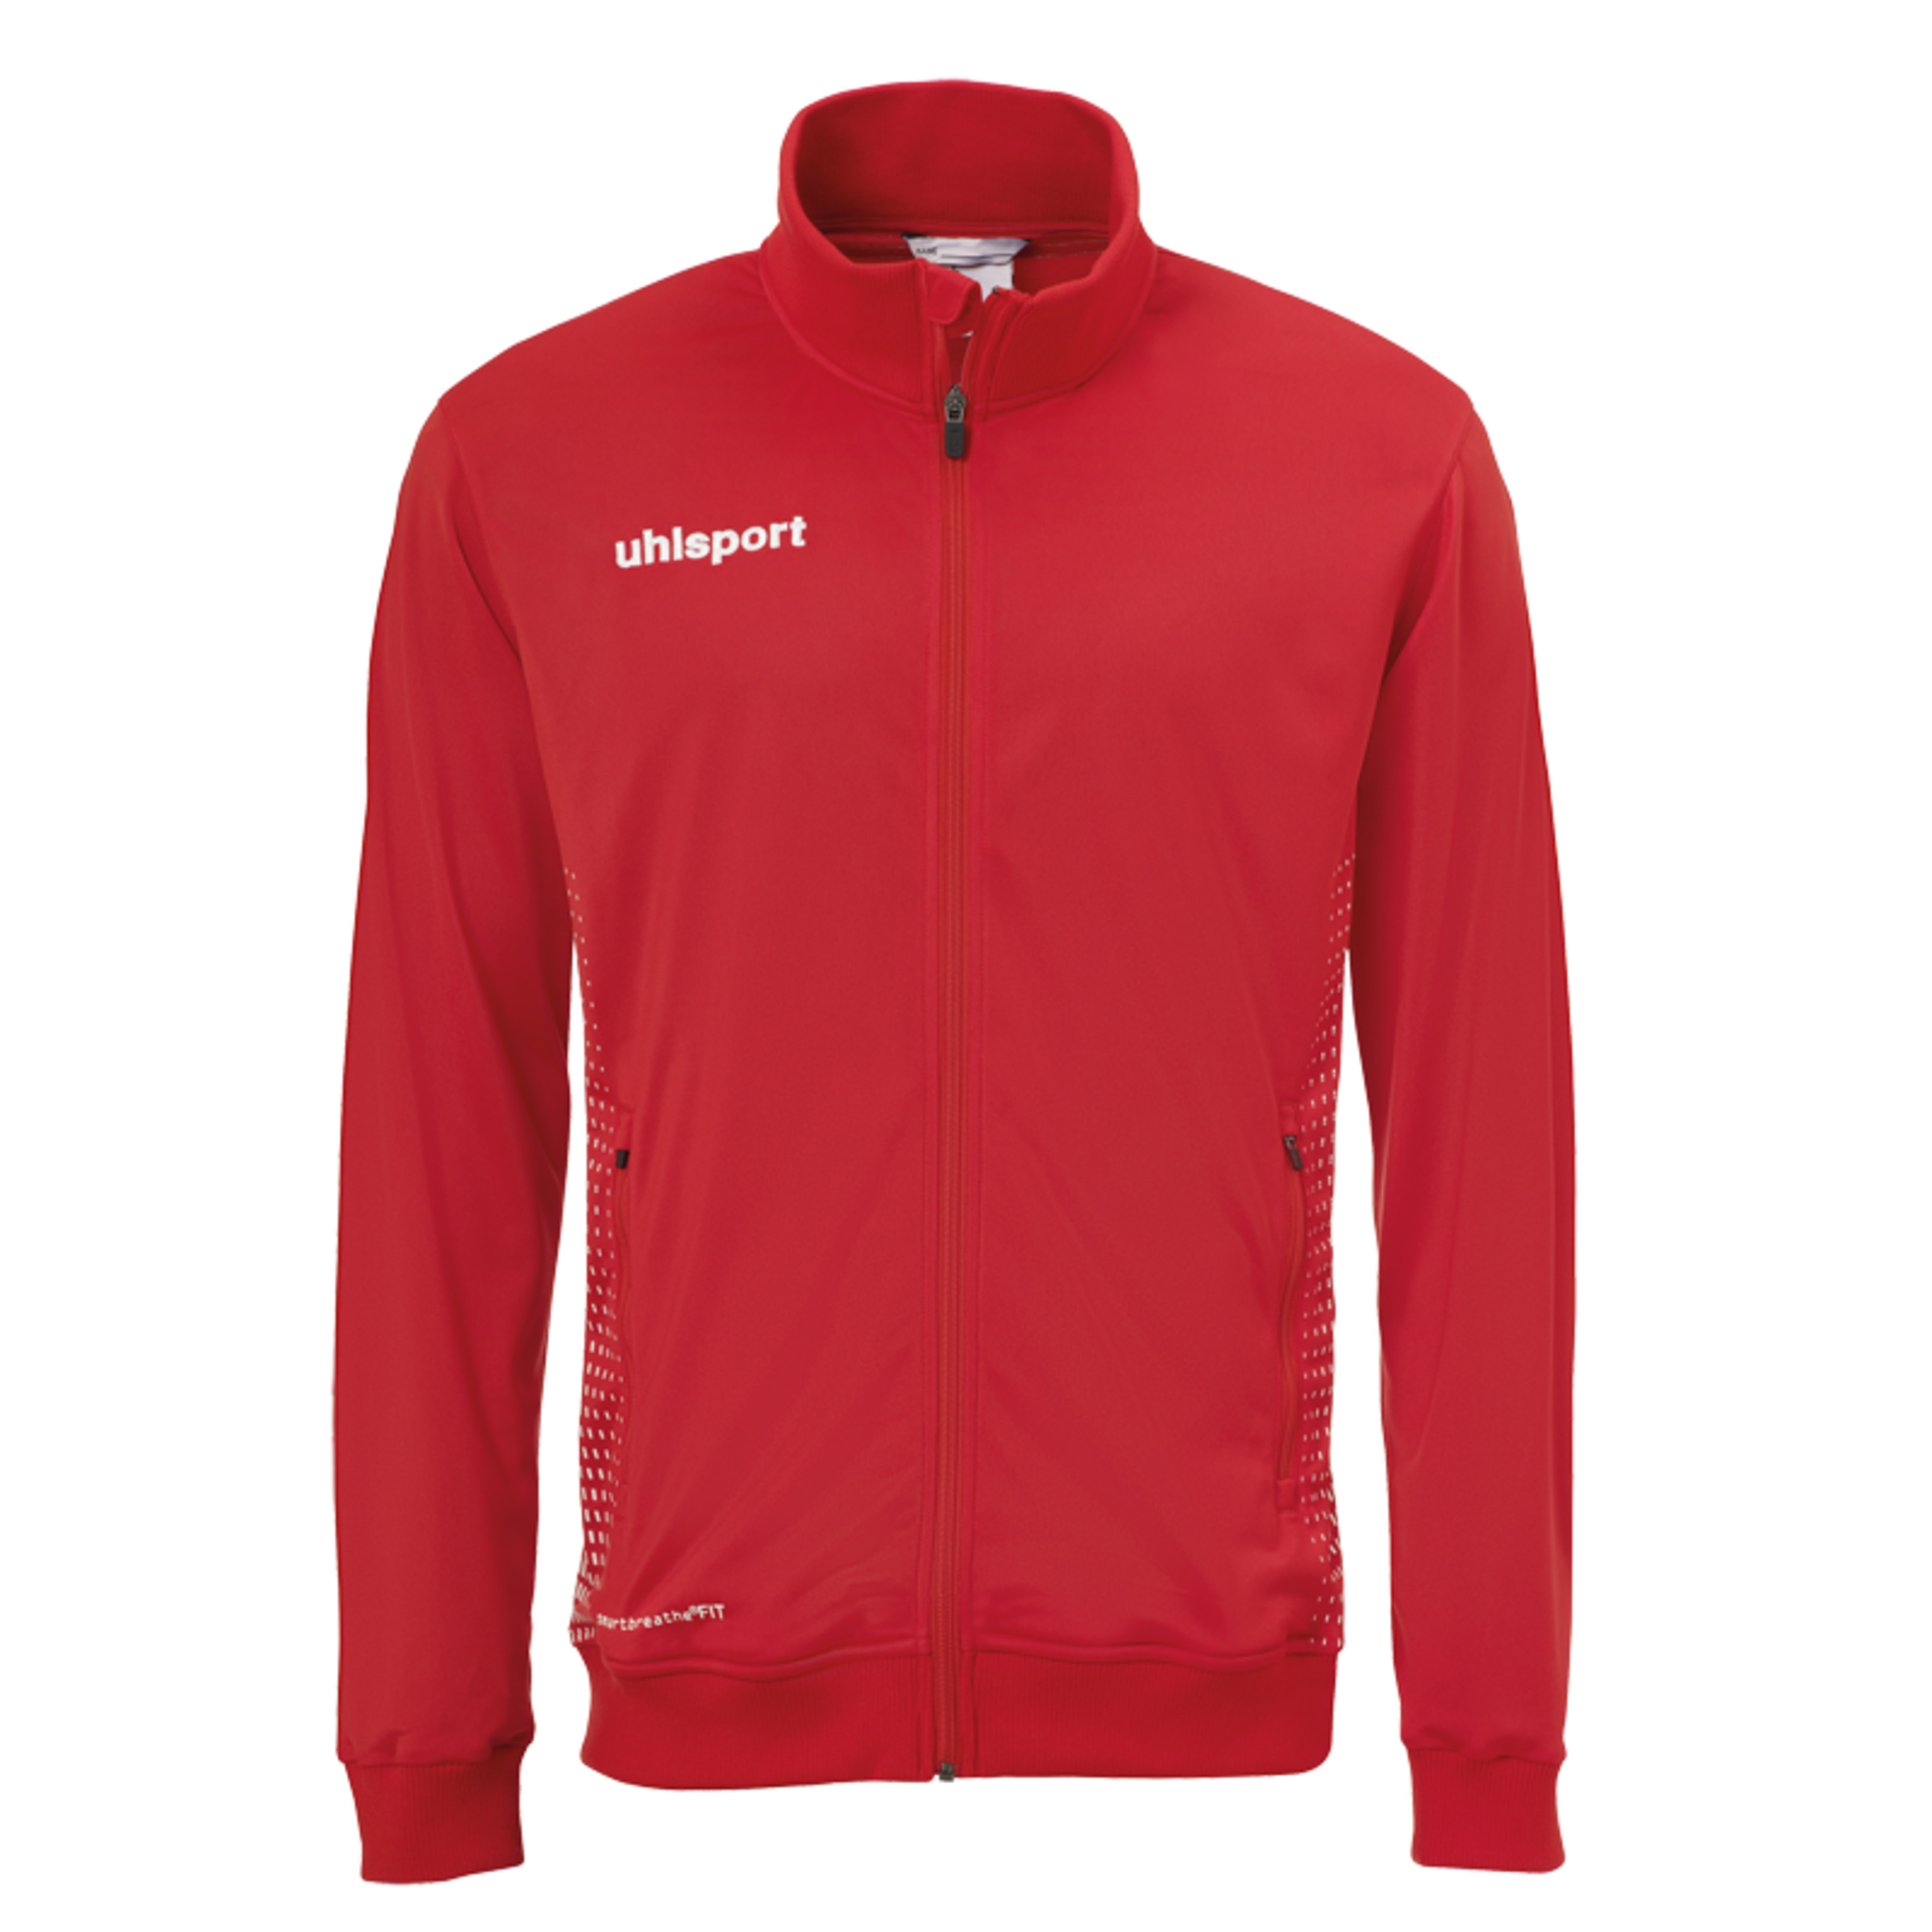 Score Track Jacket Rojo/blanco Uhlsport